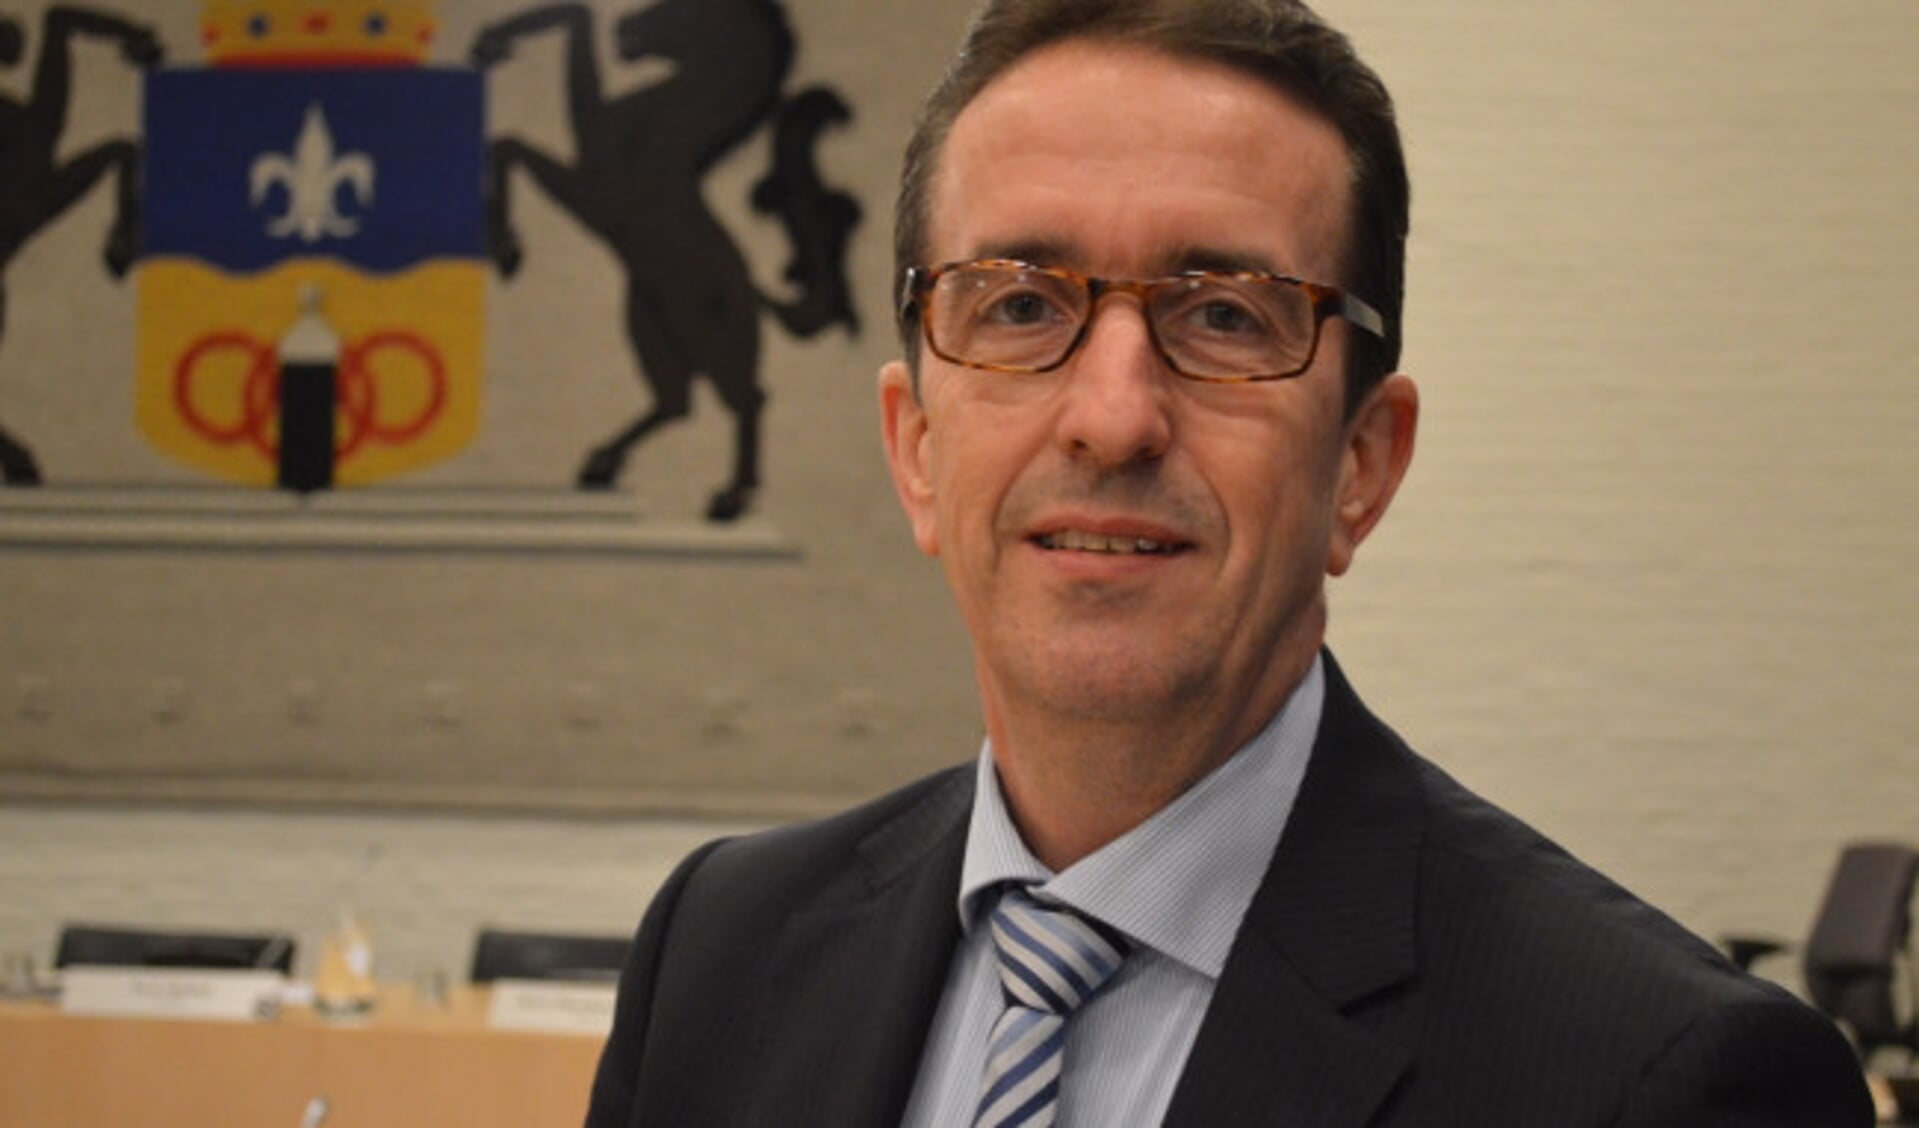  Bernd Rosing (VVD)